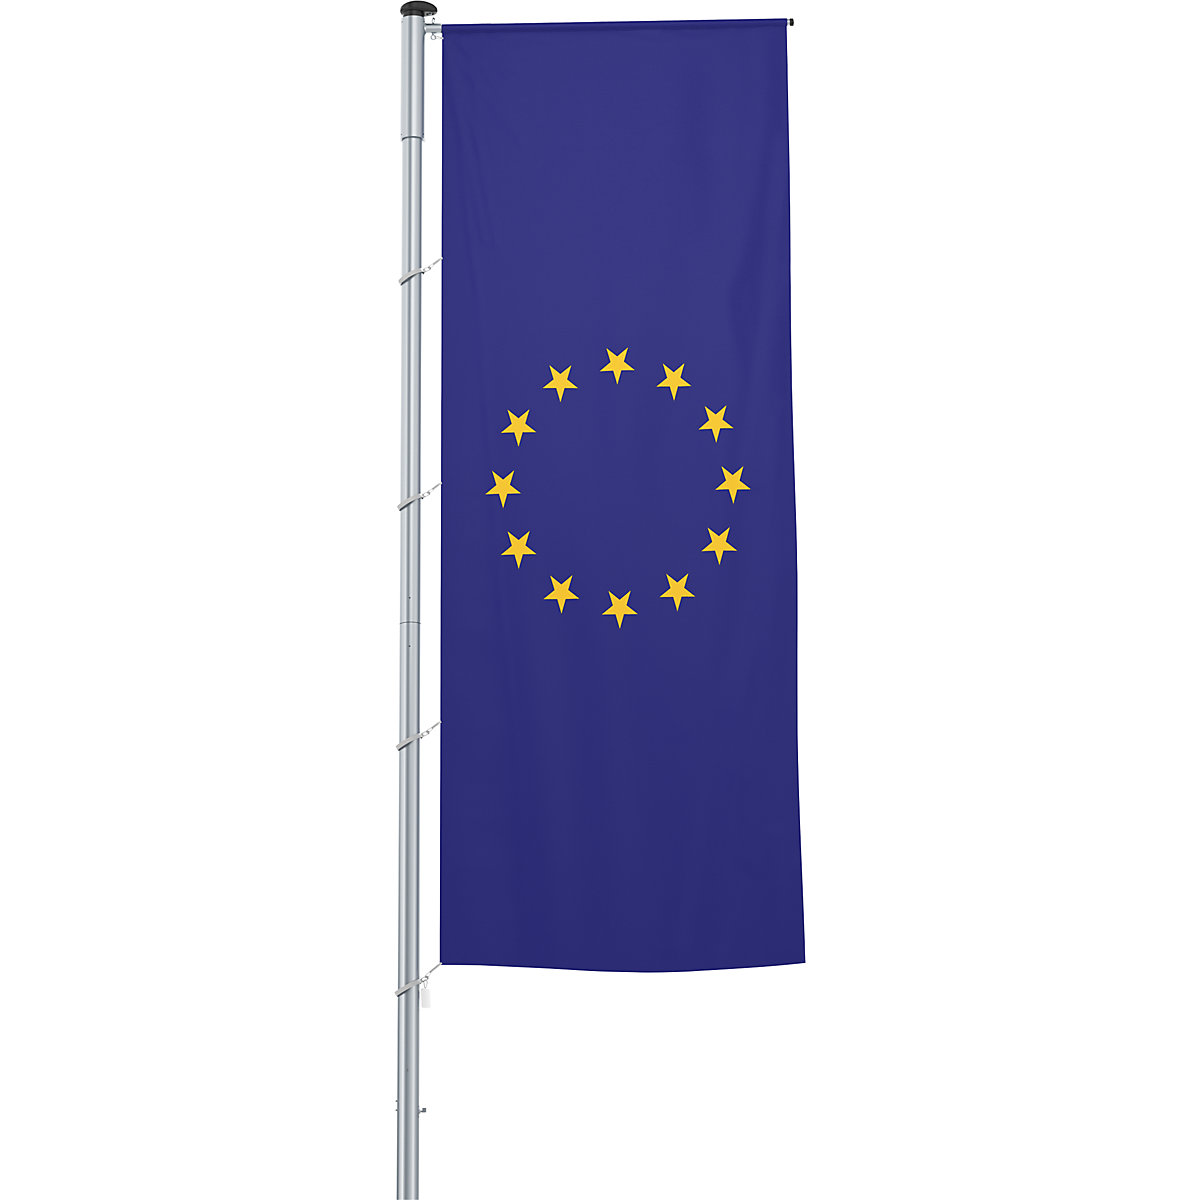 Zastava s prečko/državna zastava – Mannus, format 1,2 x 3 m, Evropska unija-15